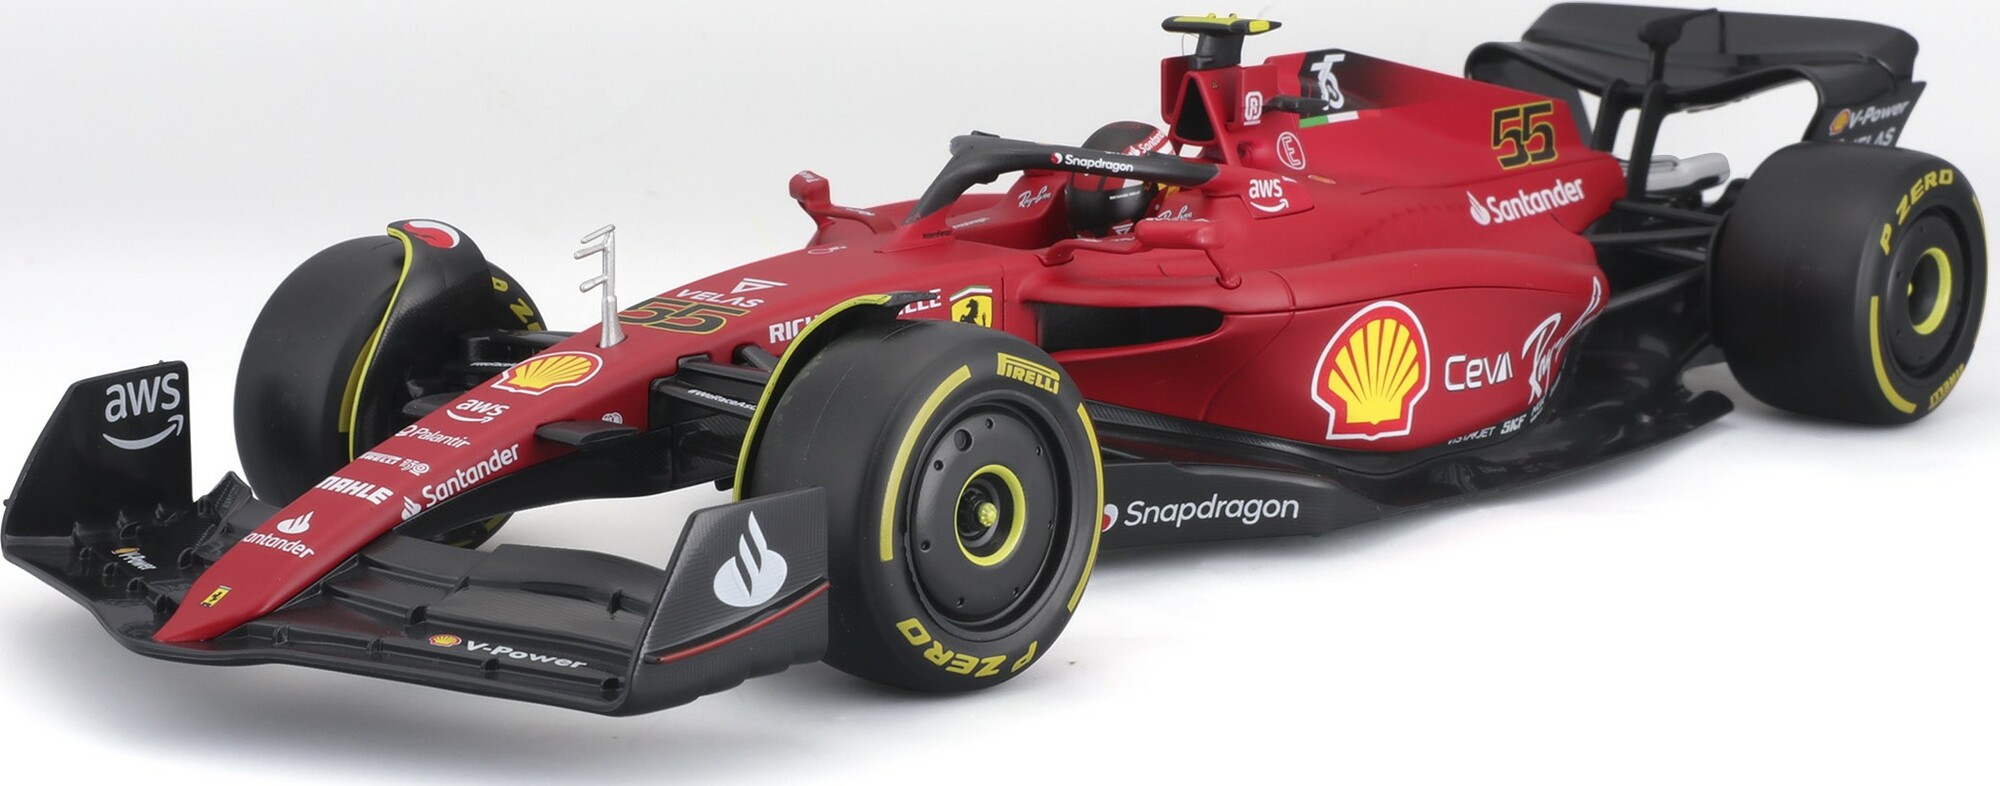 Bburago 1:18 Formule F1 Ferrari Scuderia F1-75 (2022) nr.55 Carlos Sainz - with driver and